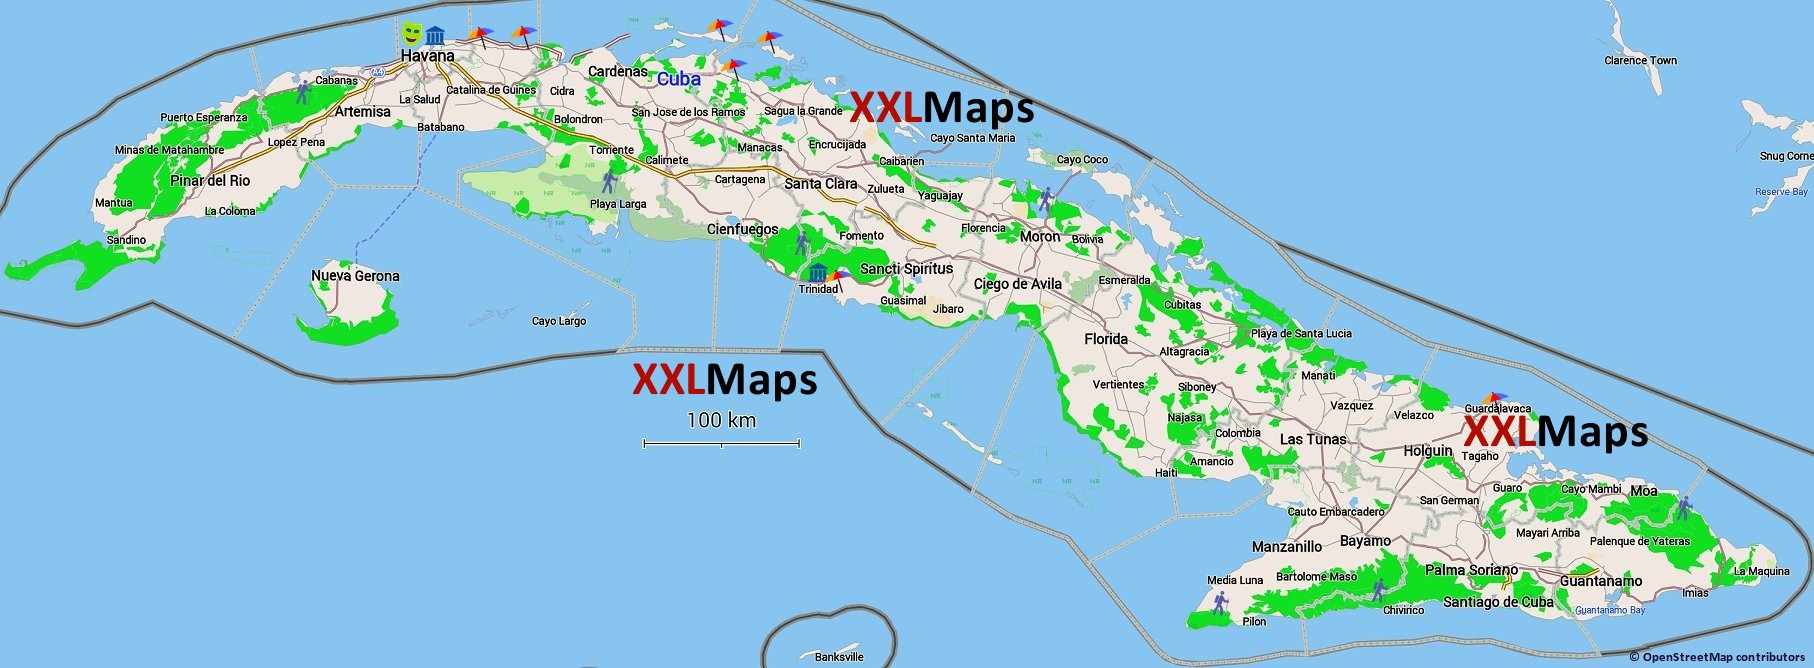 キューバ無料の観光マップ